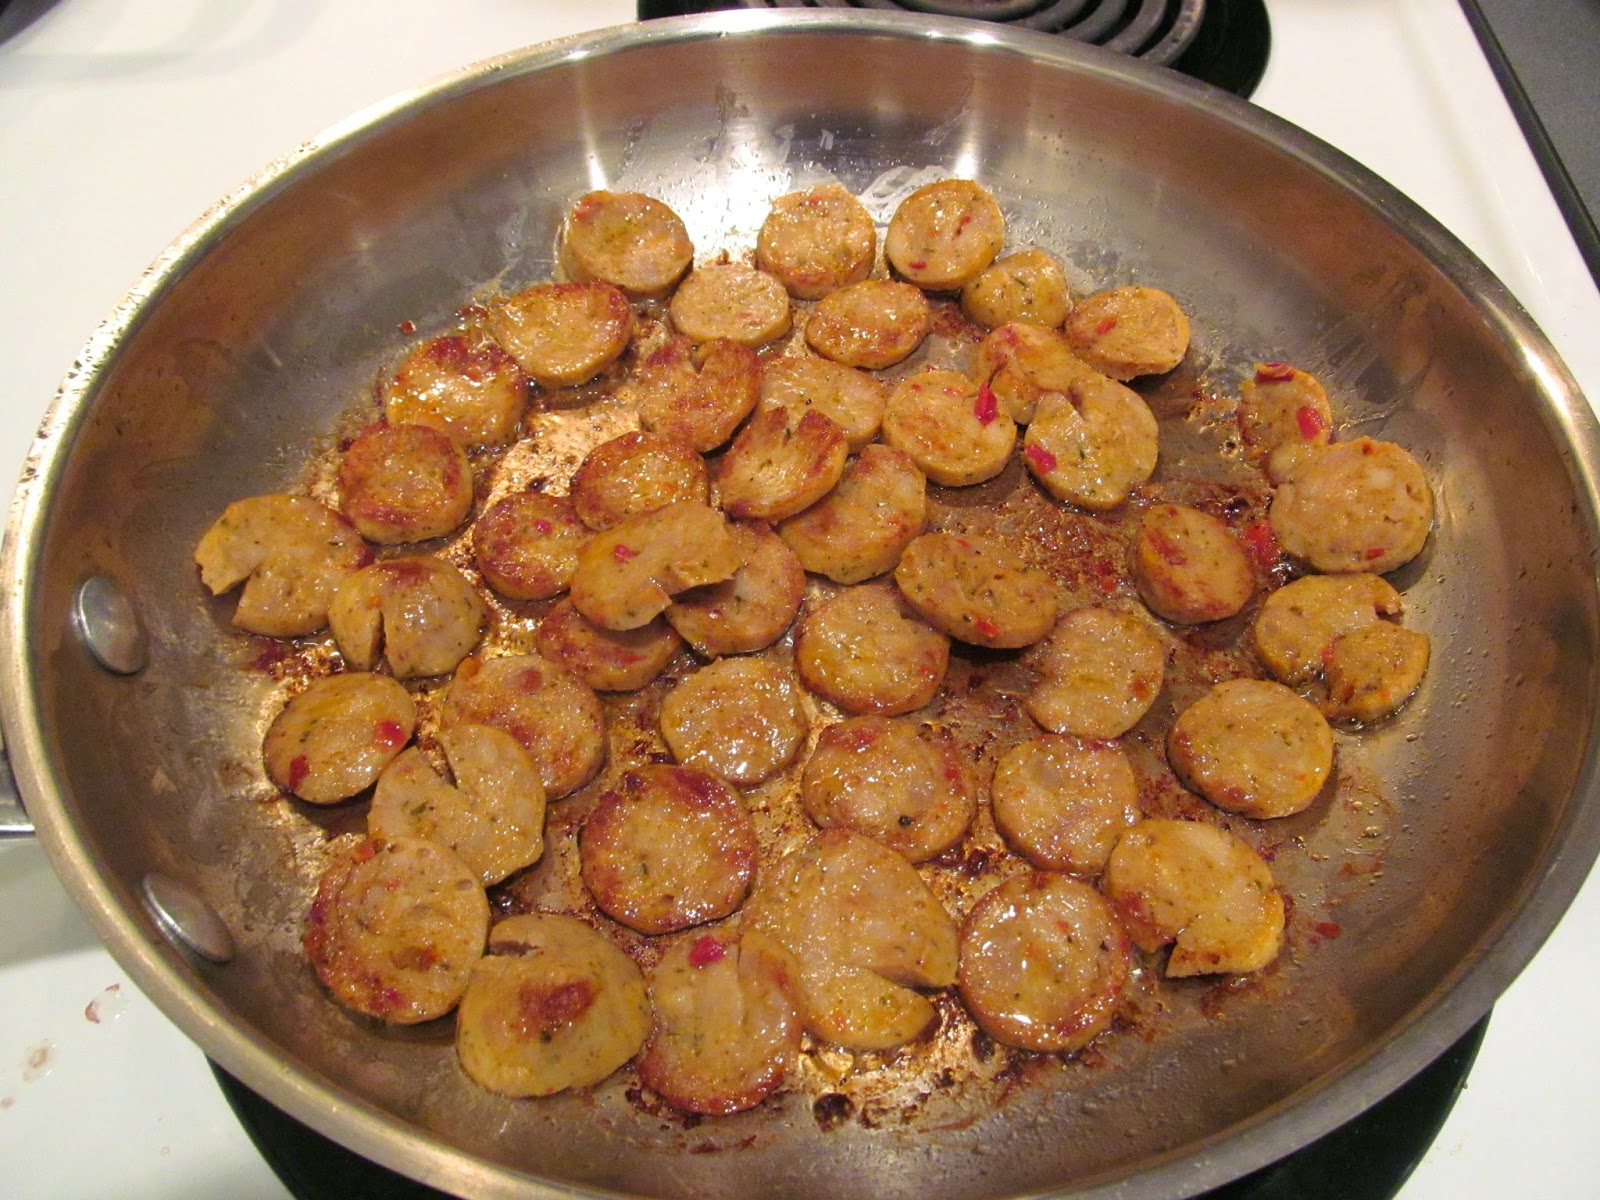 cooking sausage